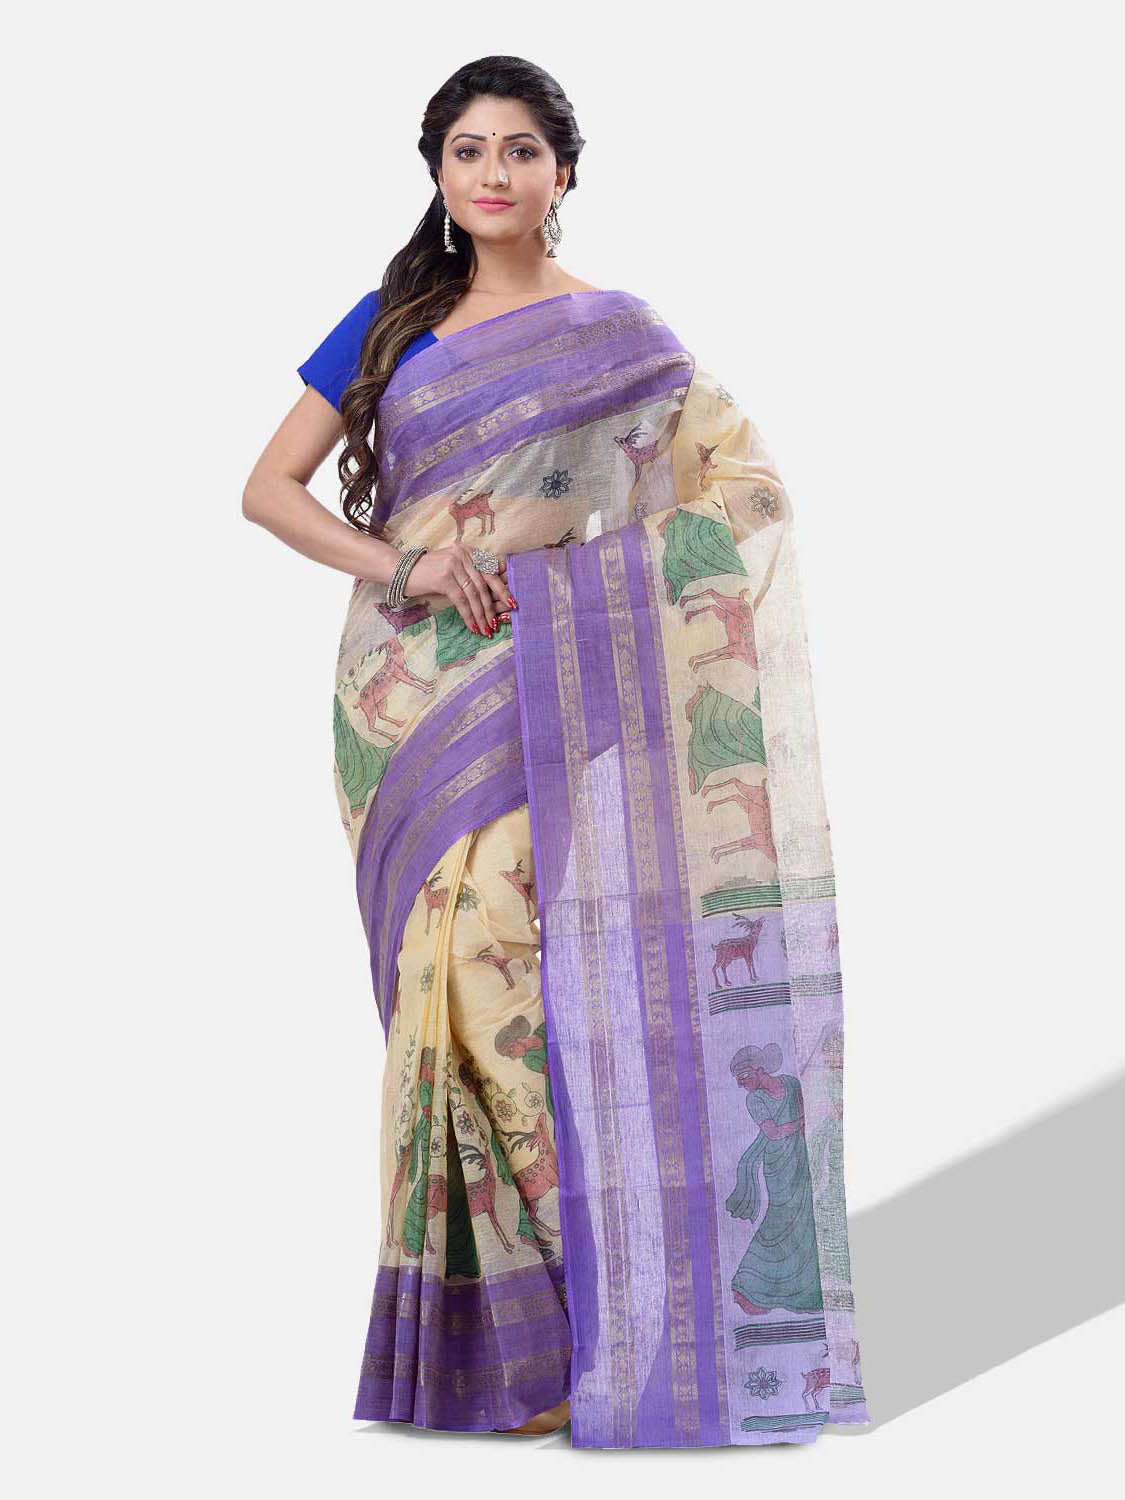 Women's Bengal Printed Purple Cotton Tant Saree - Piyari Fashion